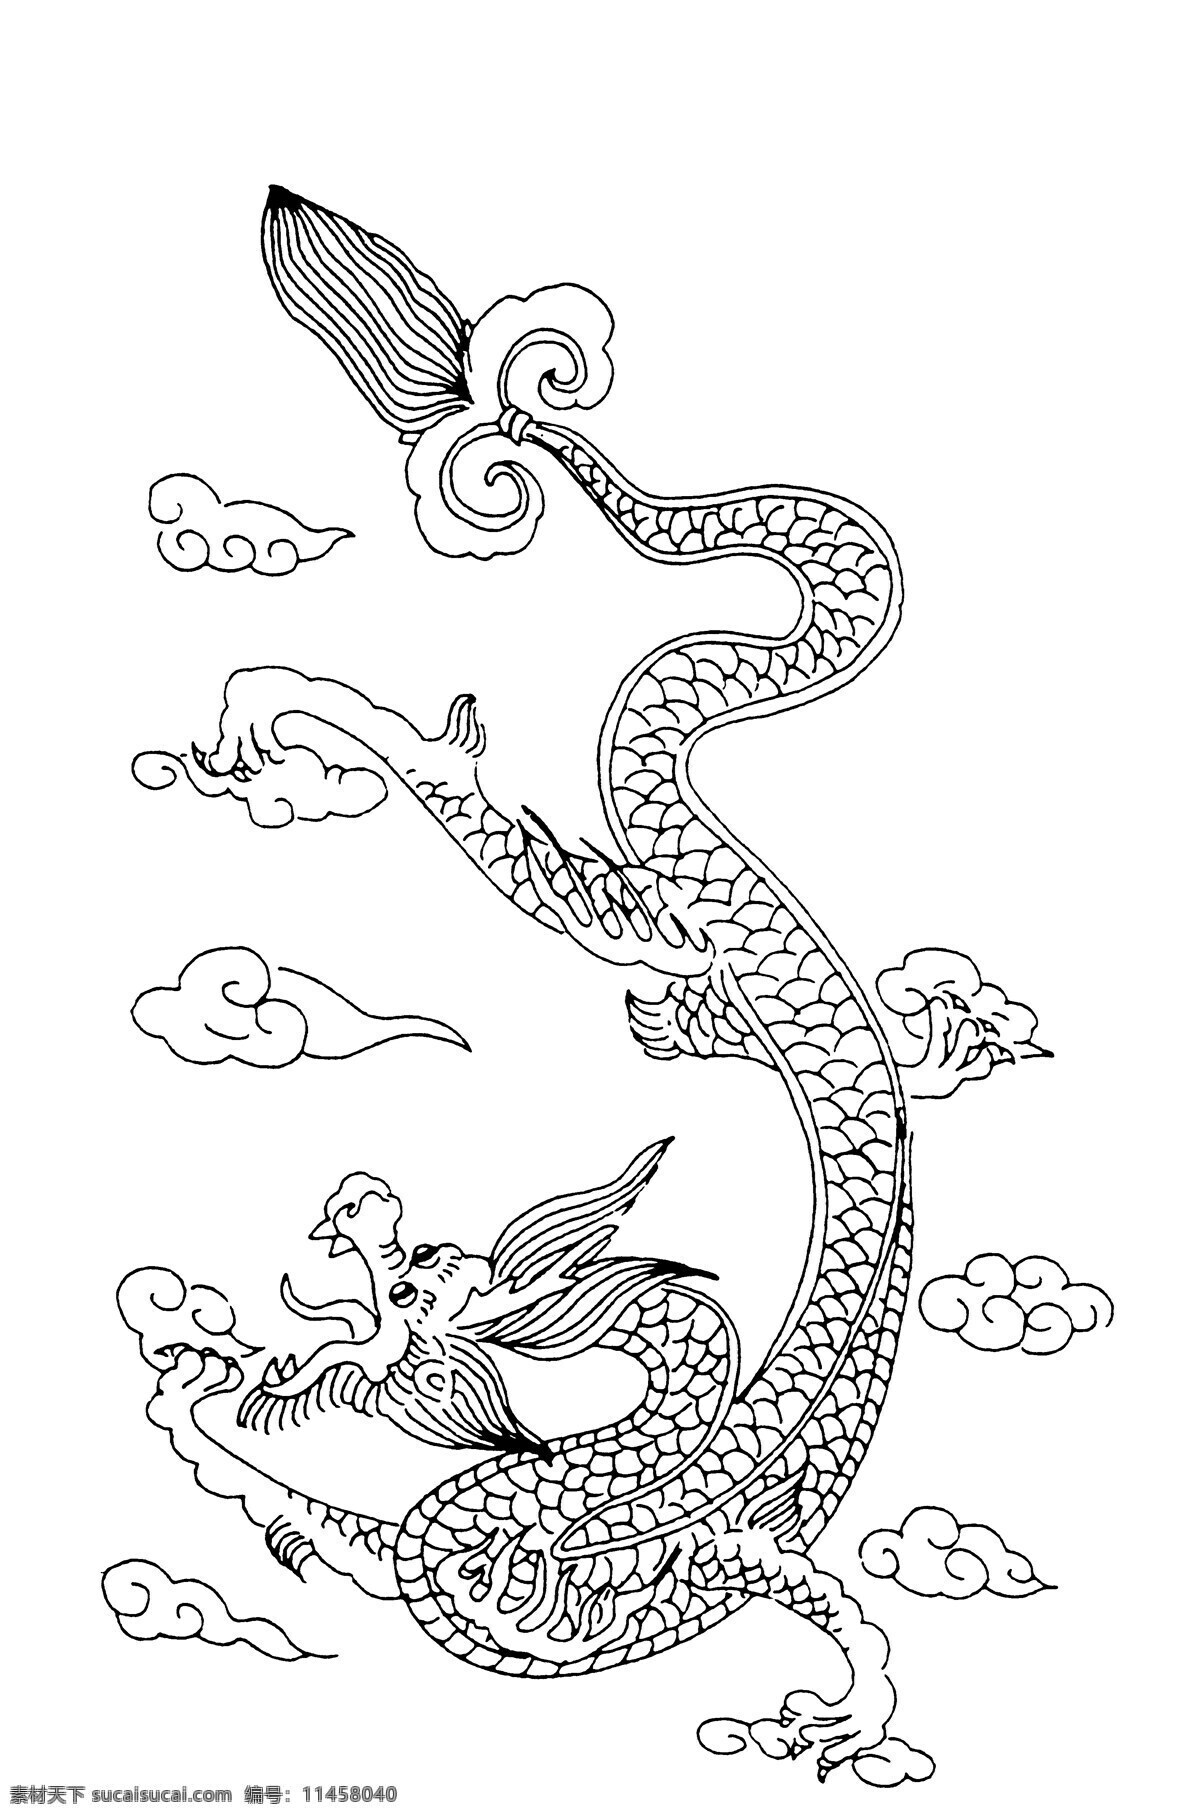 龙凤图案 清代图案 中国 传统 图案 设计素材 龙凤图纹 装饰图案 书画美术 白色